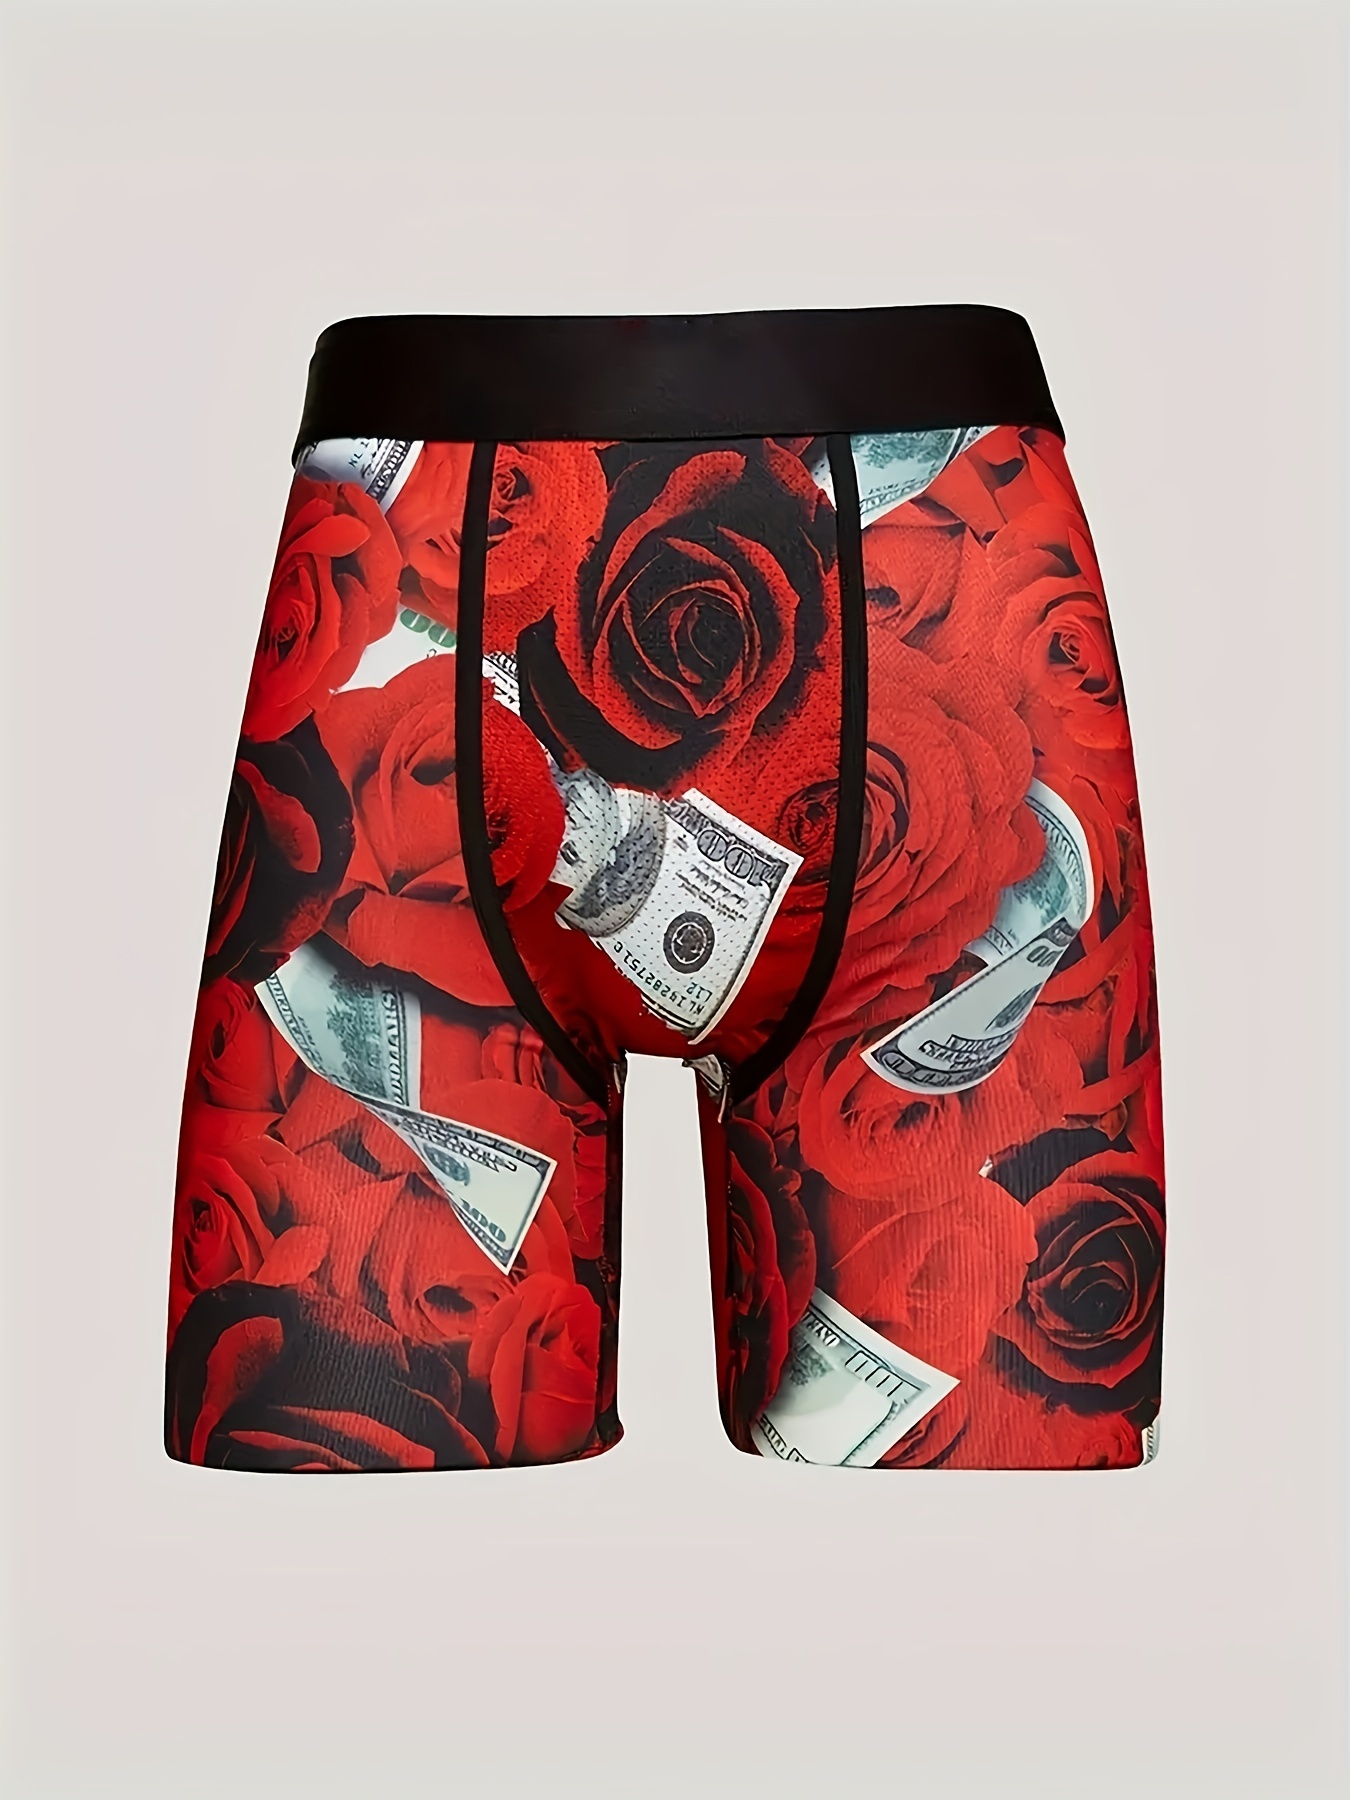 Random Stock Apparel Underwear CHOKING HAZARD Boxer Briefs Fun Novelty Gift